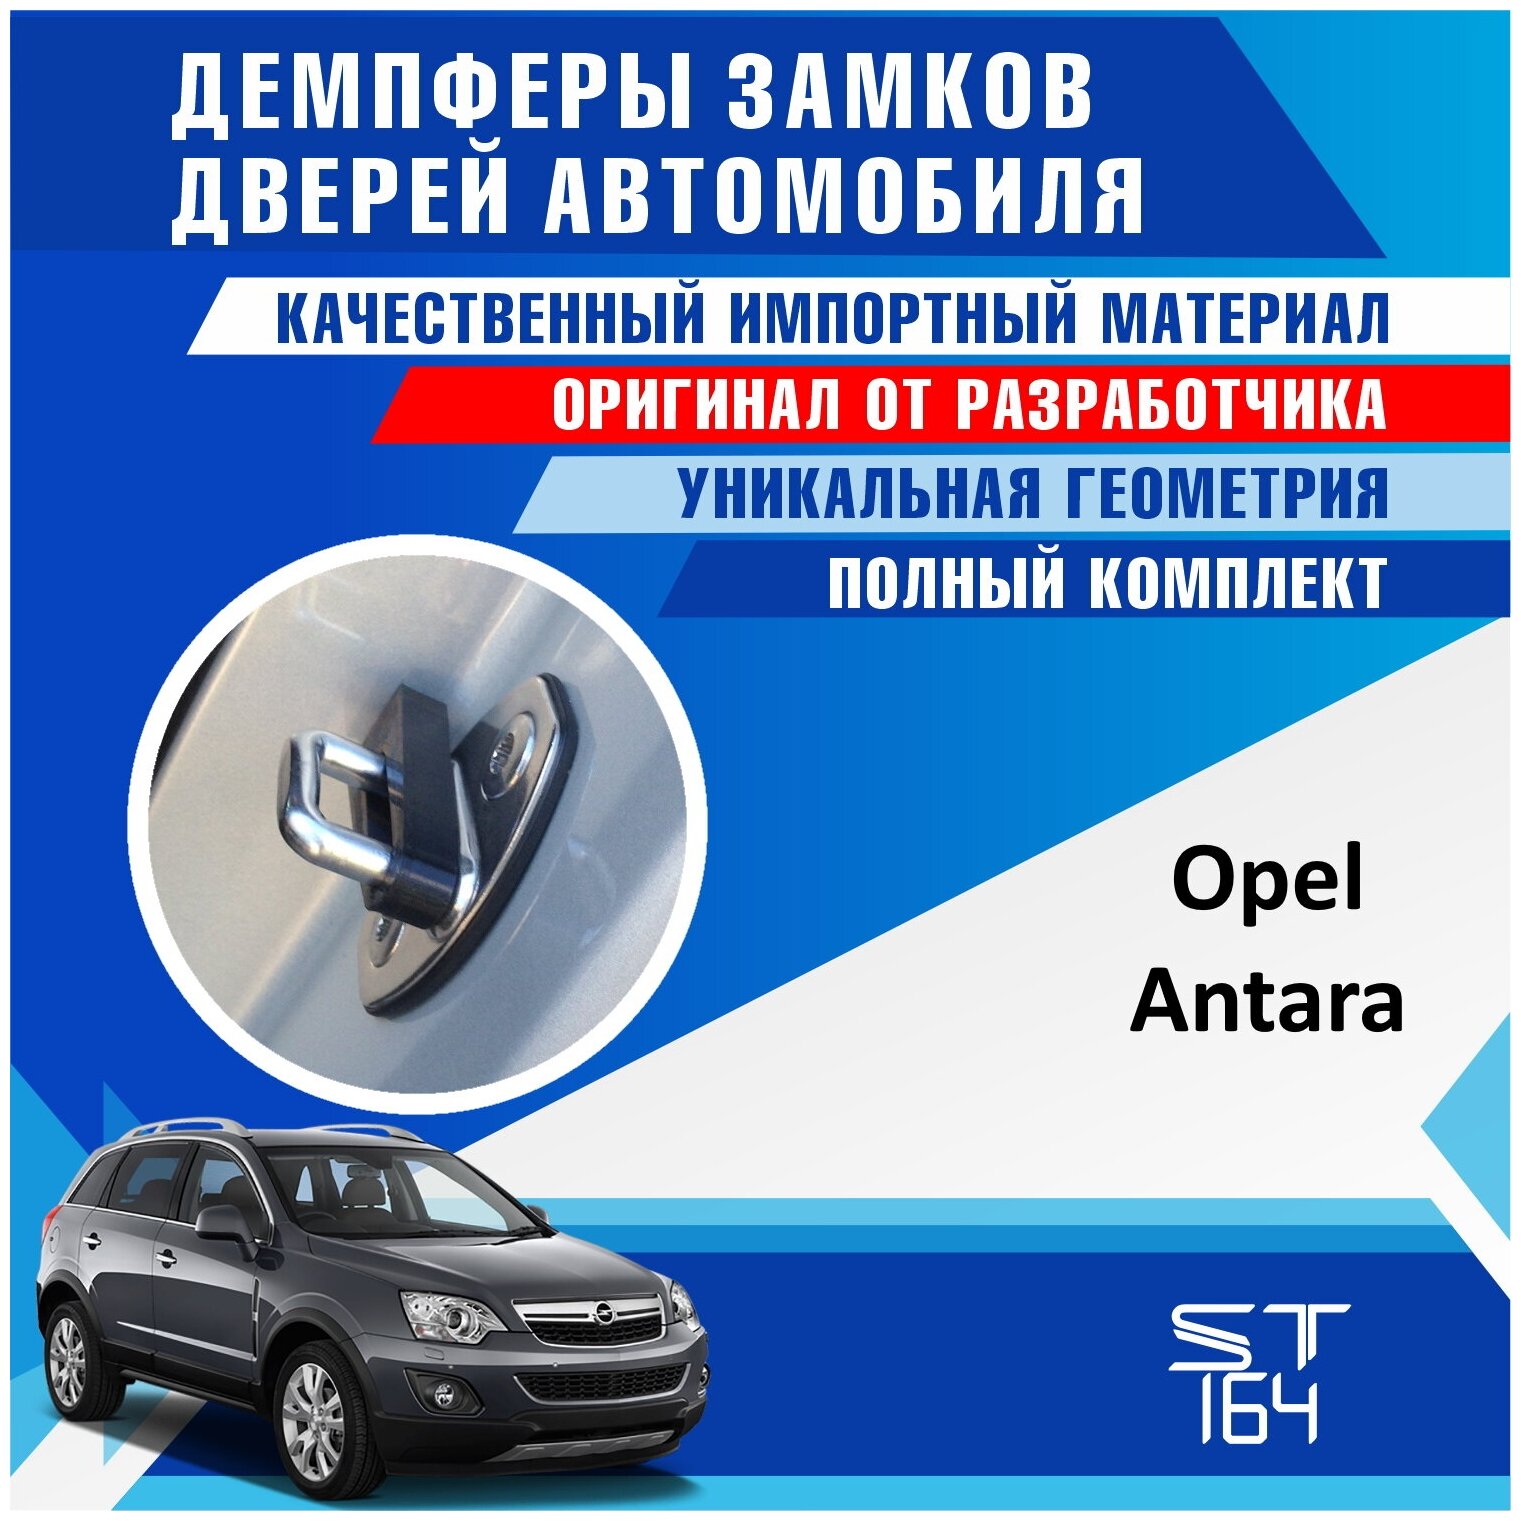 Демпферы замков дверей Опель Антара (Opel Antara), на 4 двери + смазка